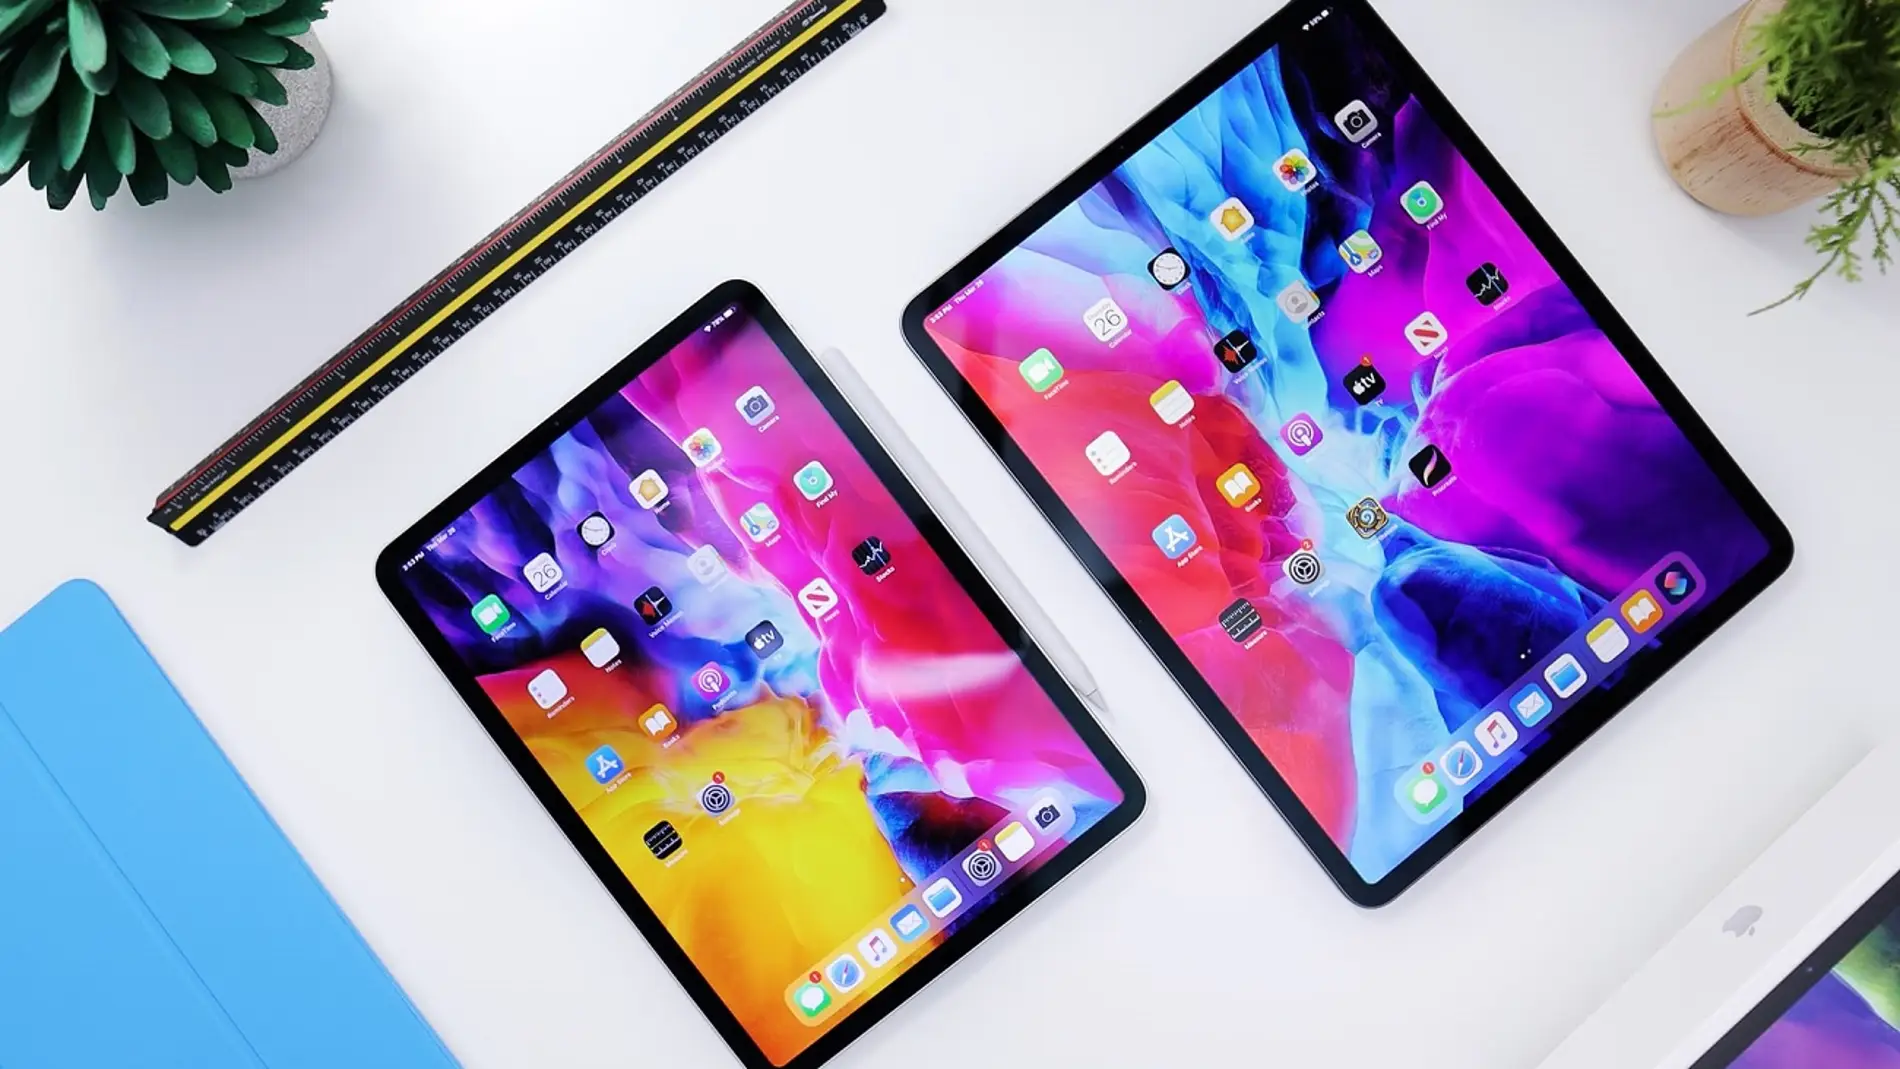 El iPad Pro OLED contará con una pantalla más grande entre otras sorpresas